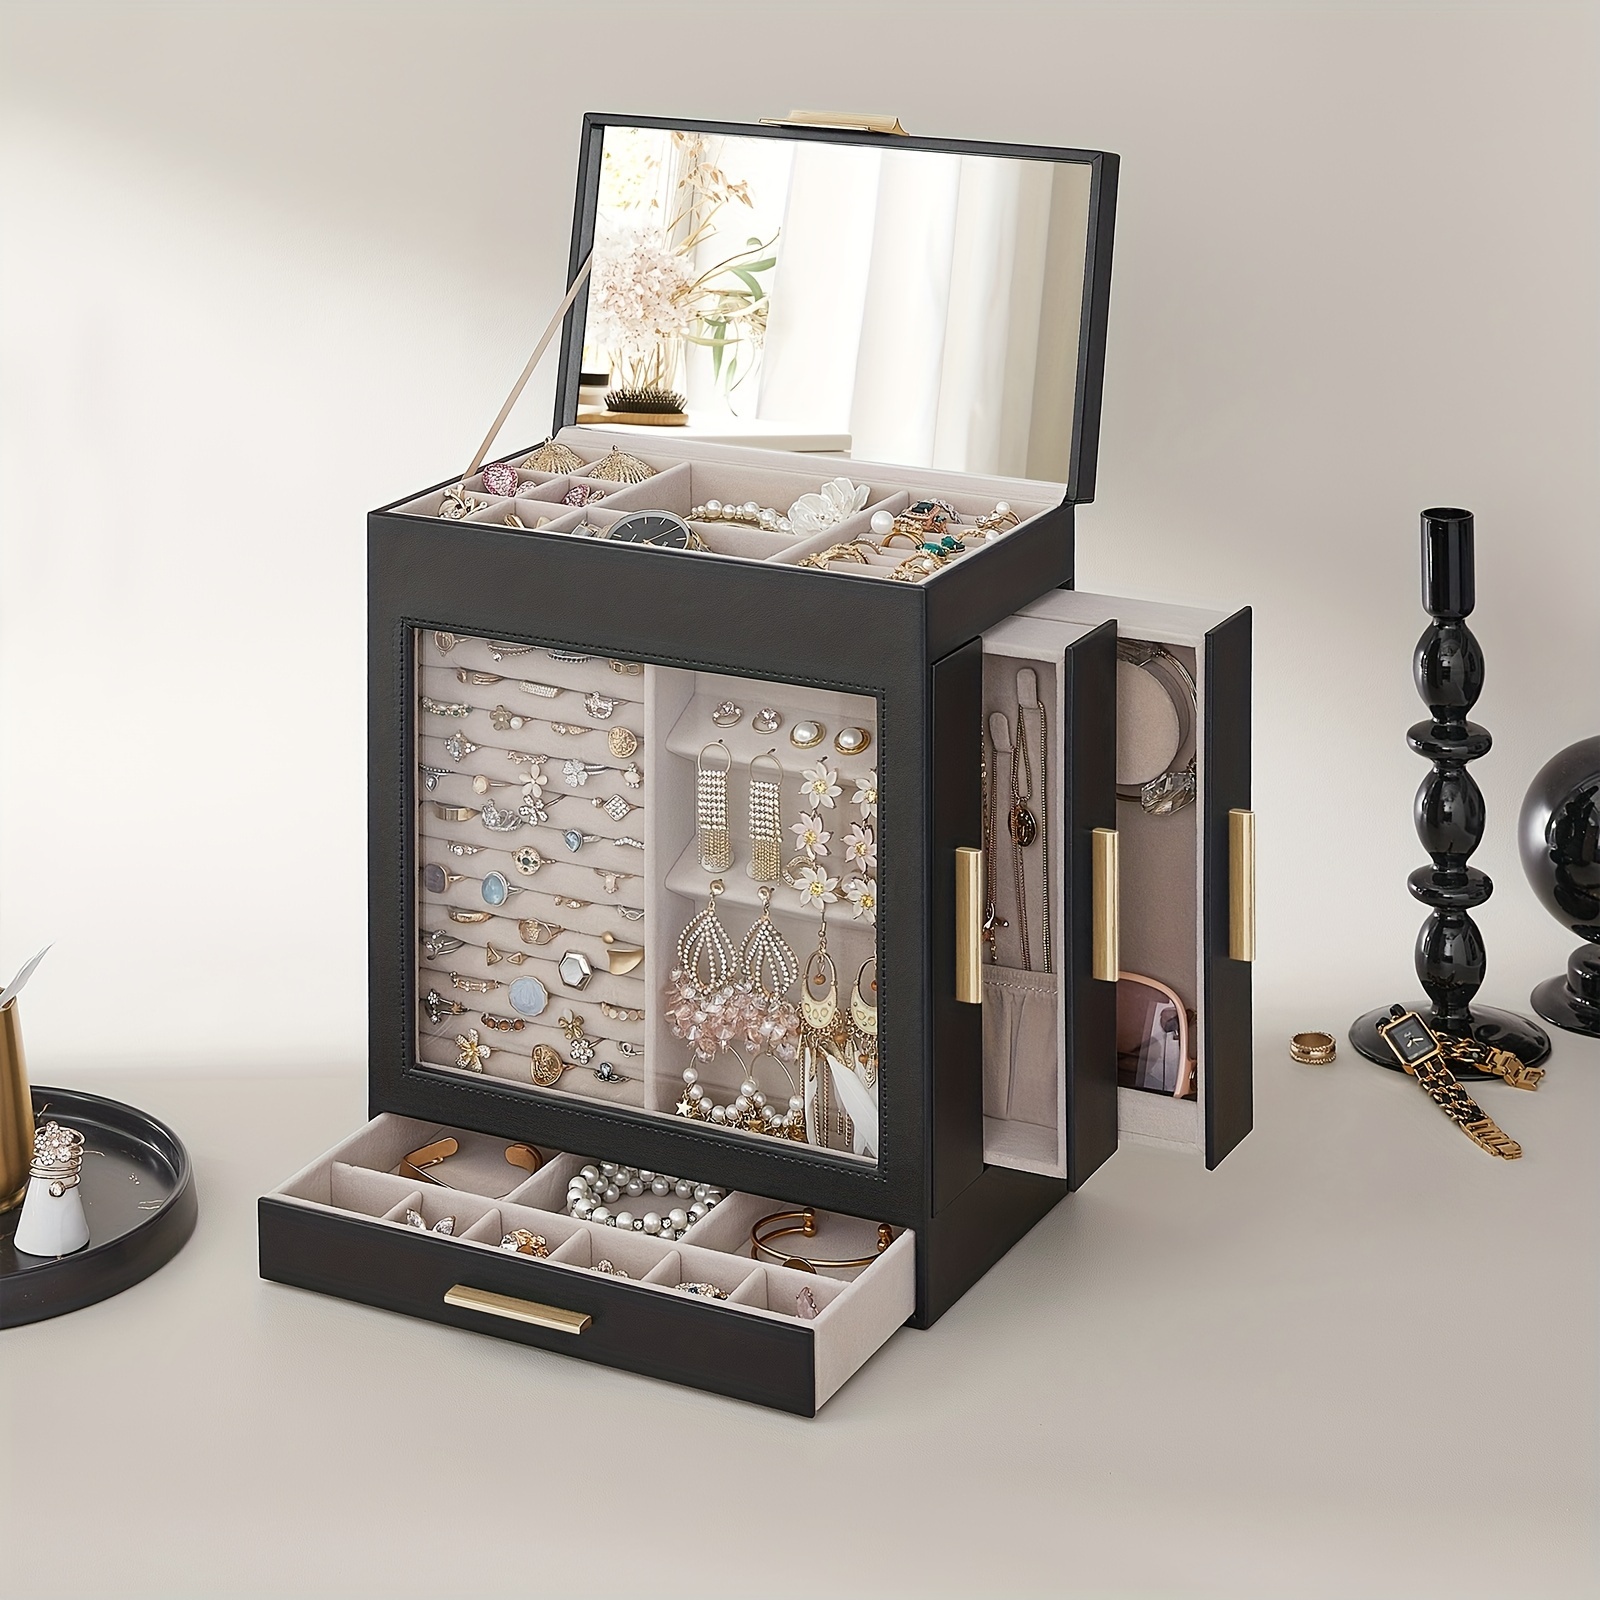 

1pc Jewelry Box With Glass Window, 5-layer Jewelry Organizer With 3 Side Drawers, Jewelry Storage Box With Big Mirror